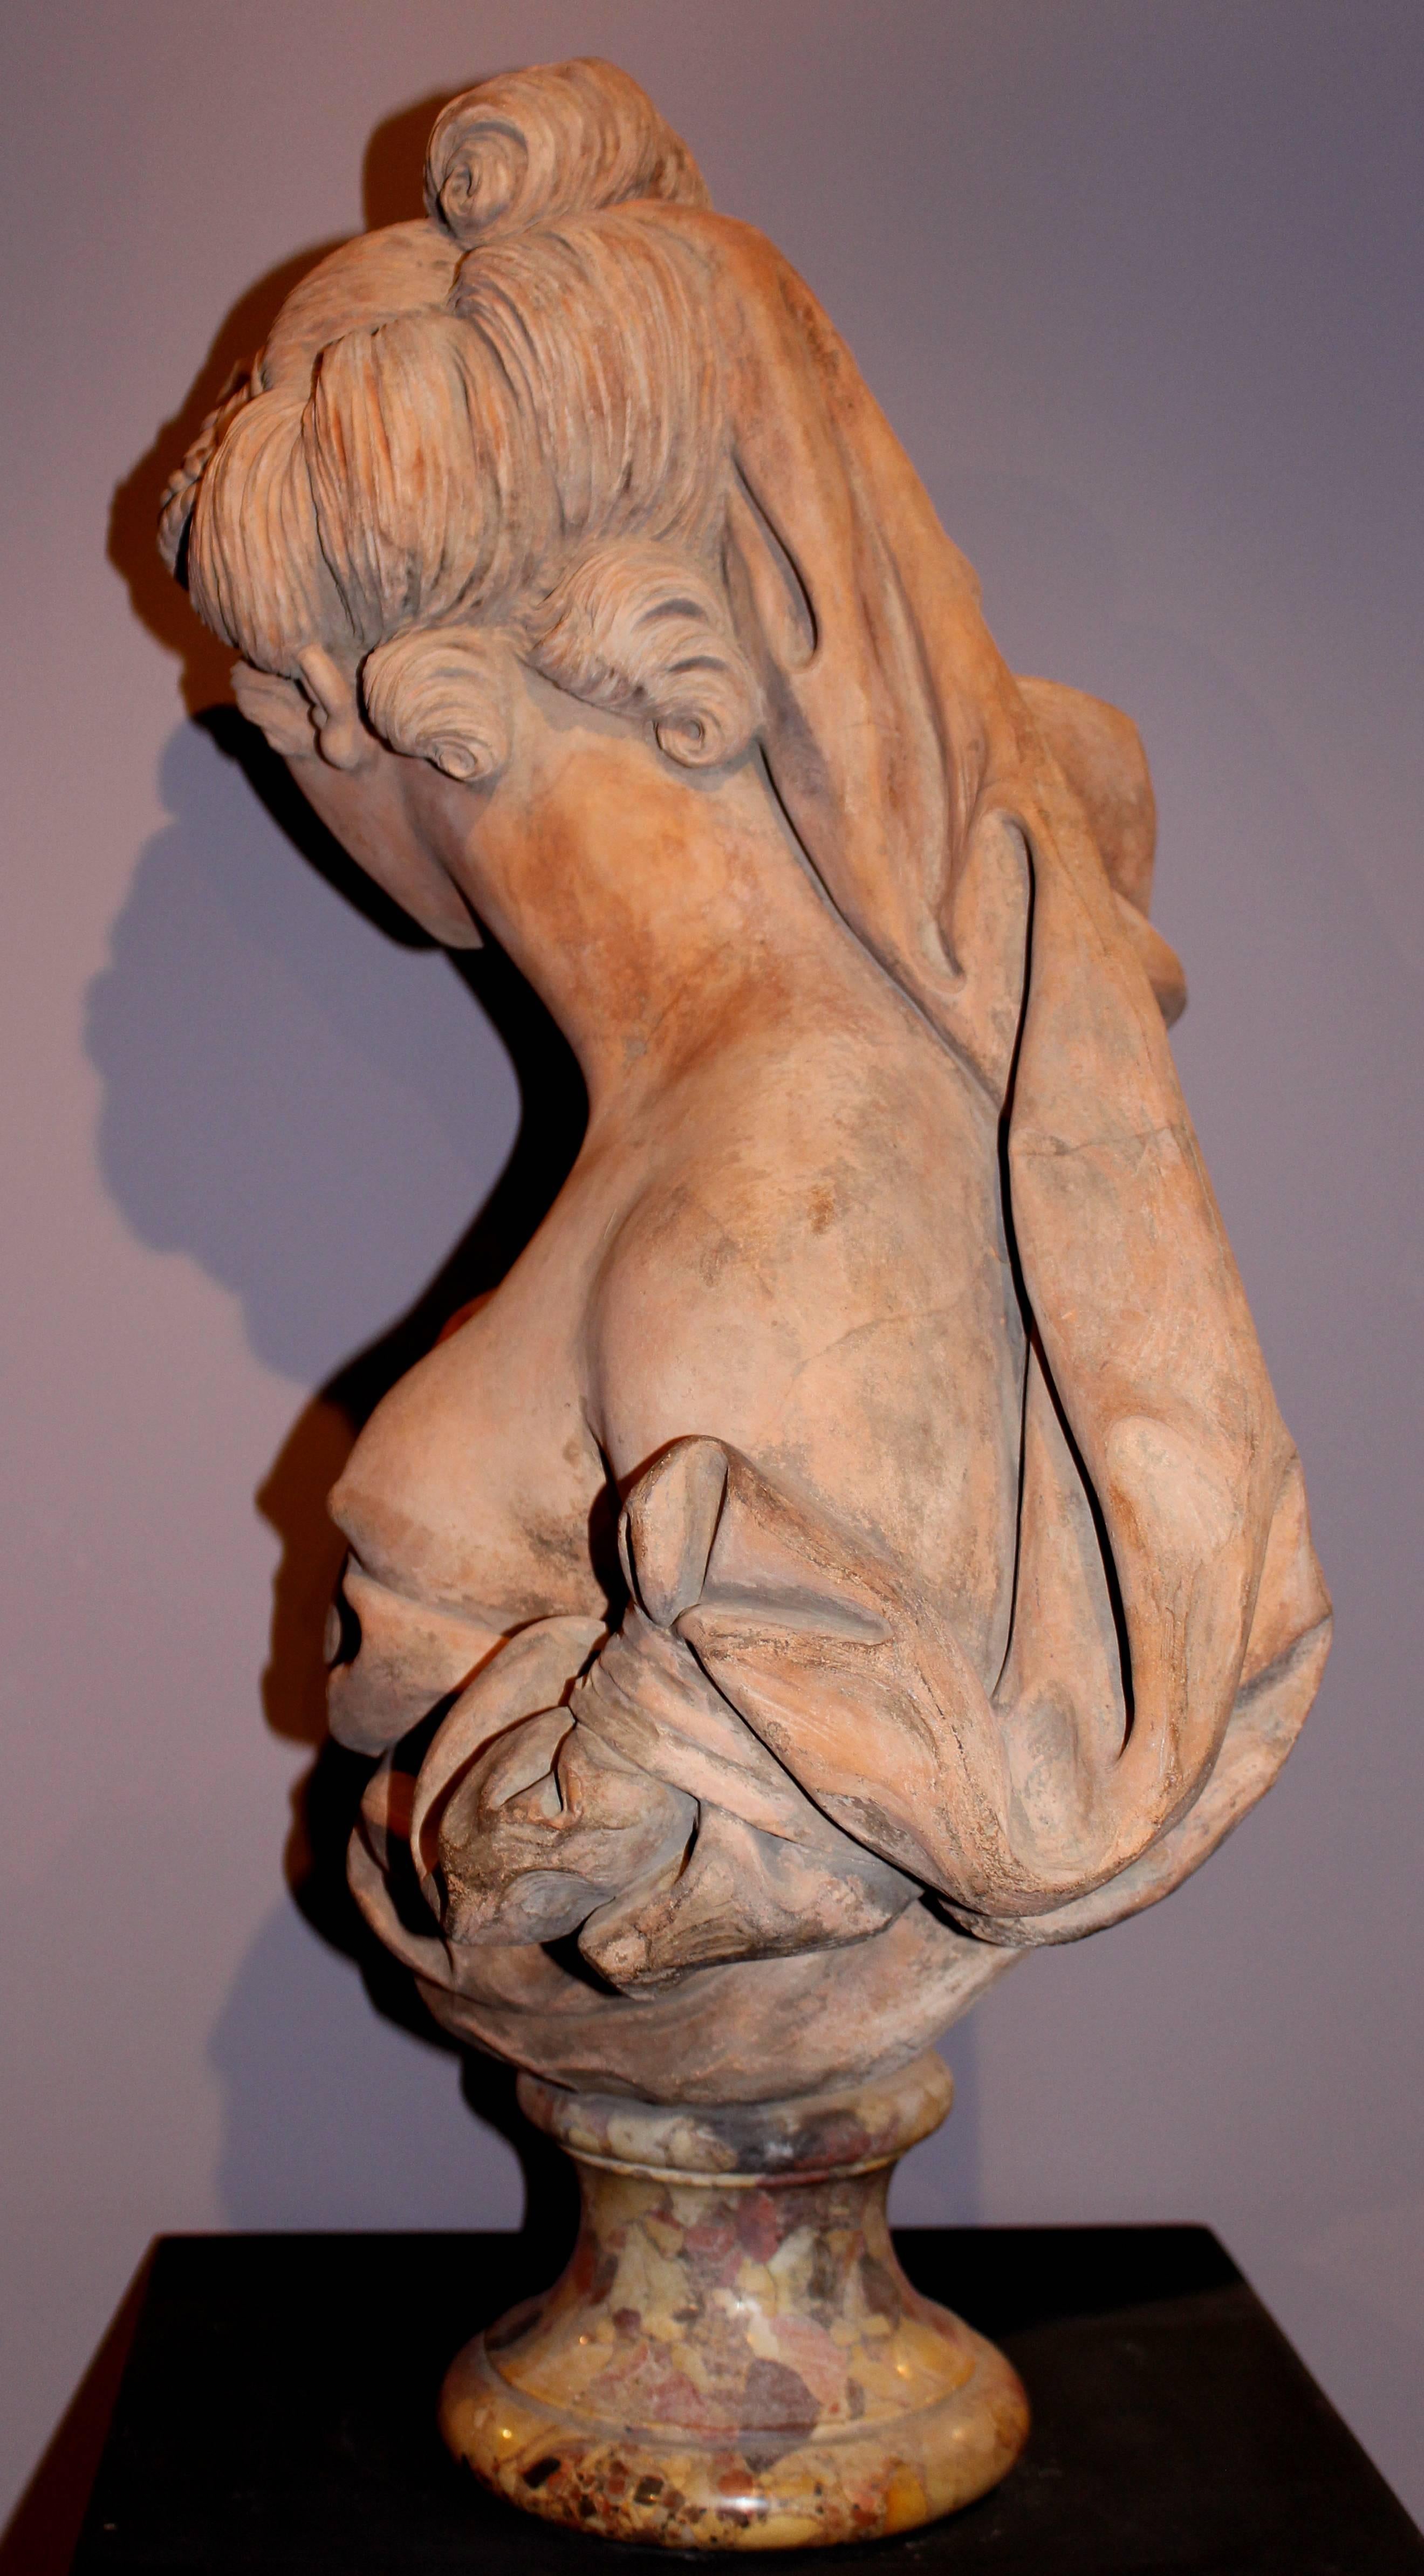 Bust of Ceres or Demeter - Brown Figurative Sculpture by Josse François Joseph le Riche